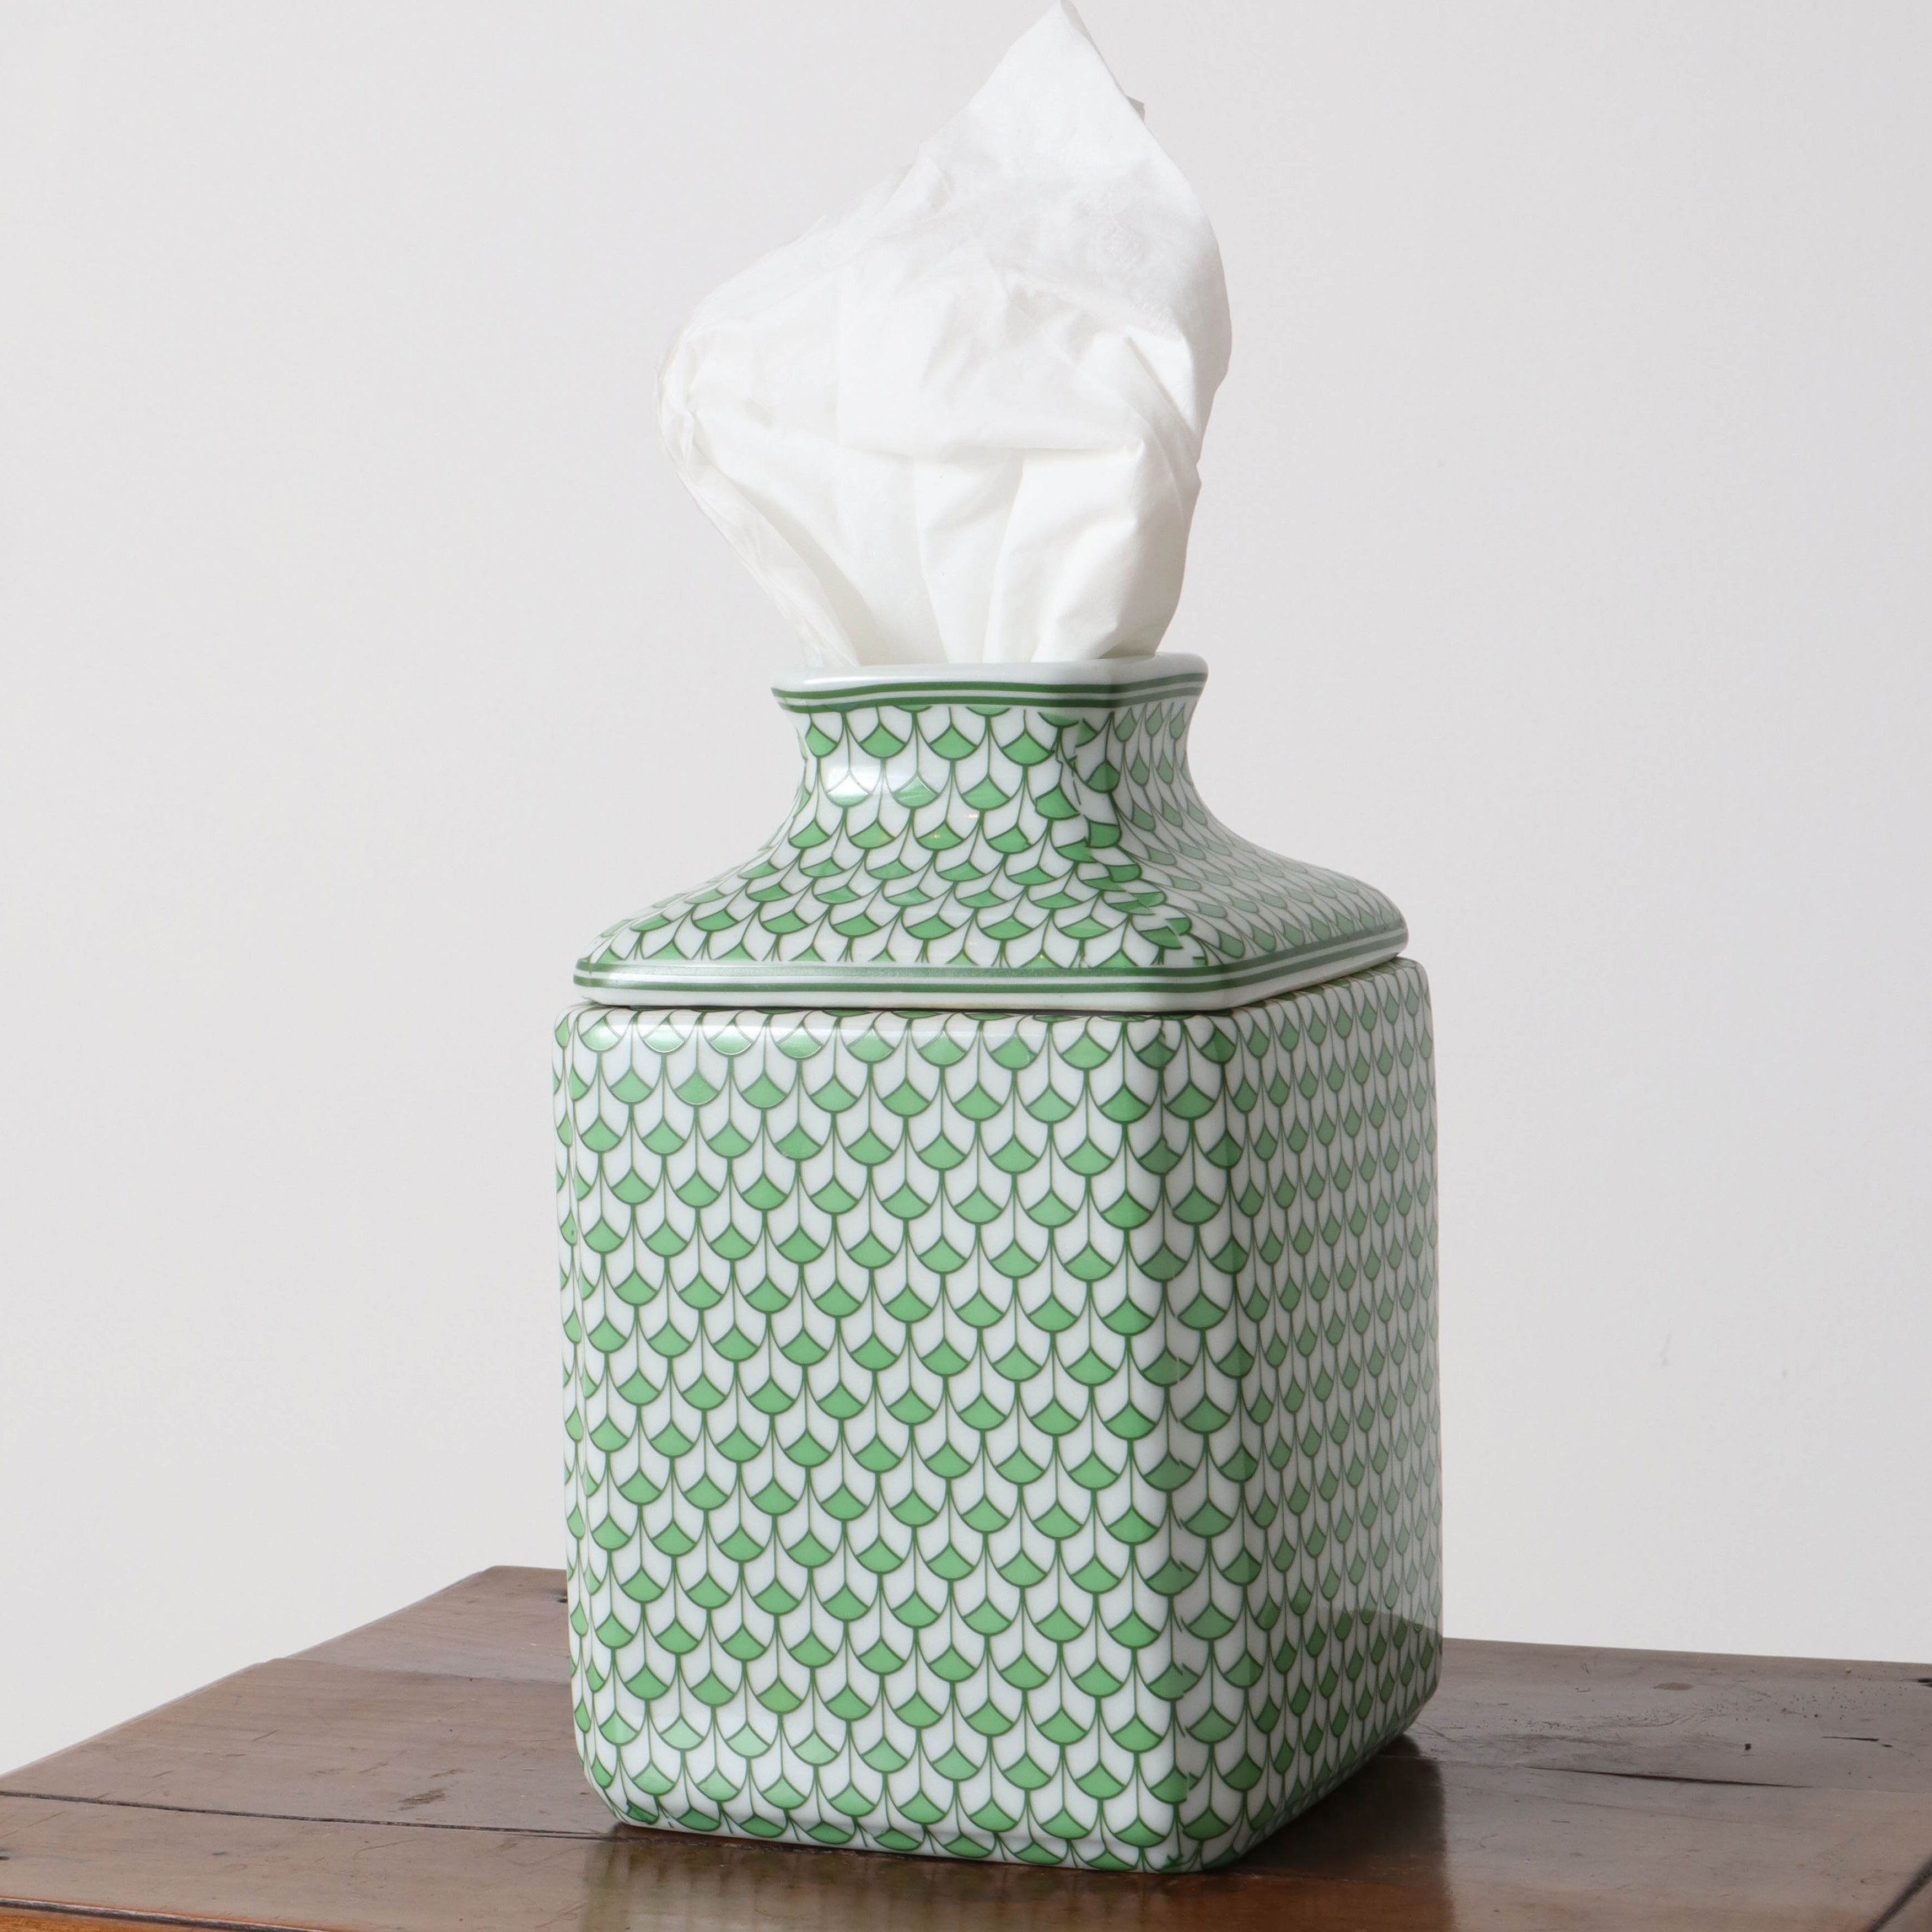 Lemon Green Scalloped Porcelain Tissue Box Holder – English Traditions